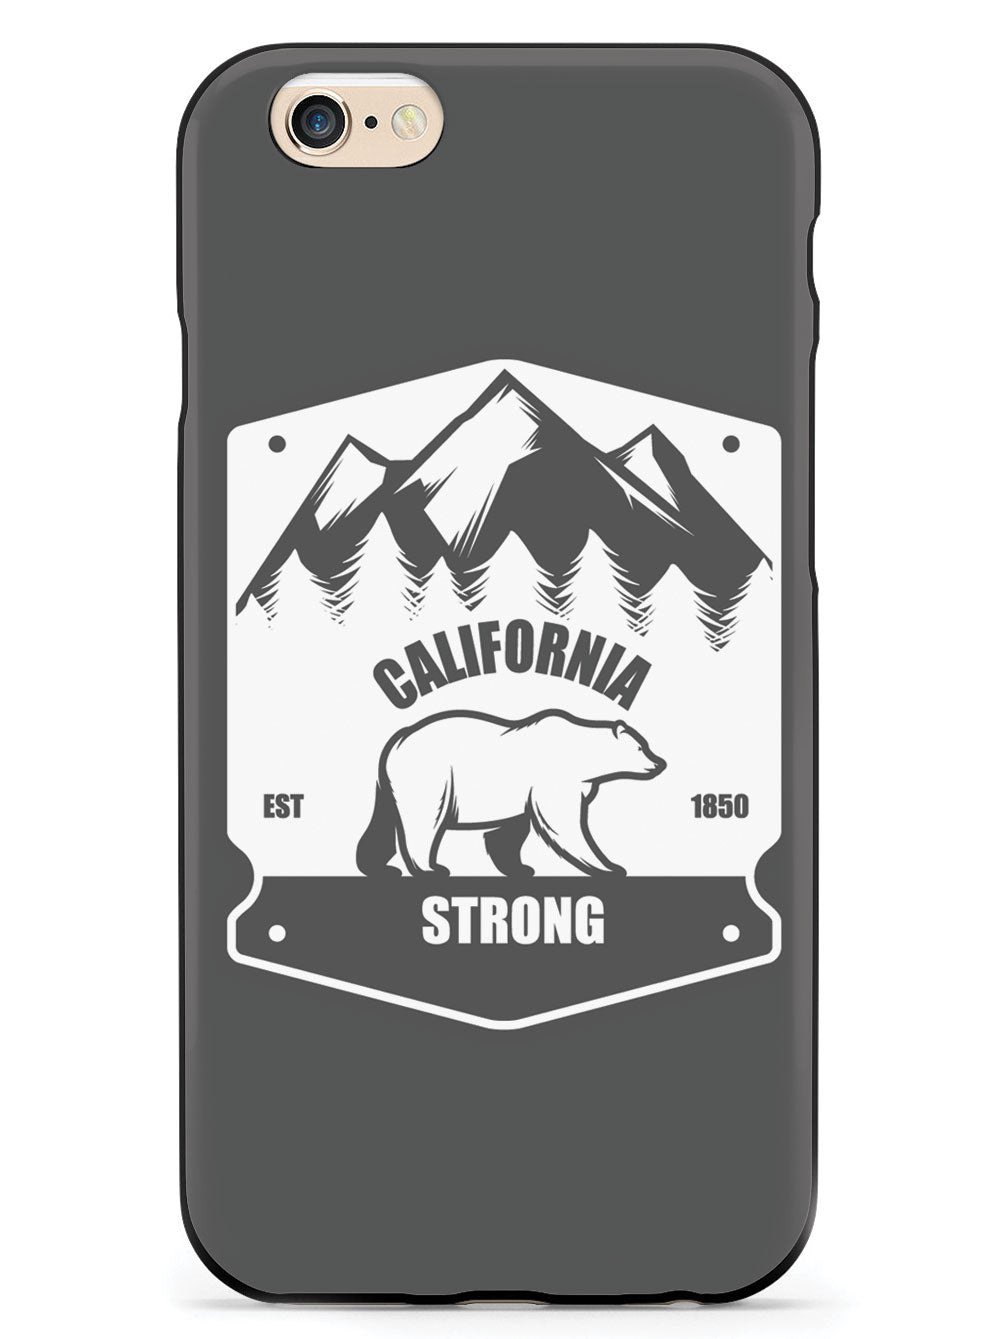 California Strong - Badge Case